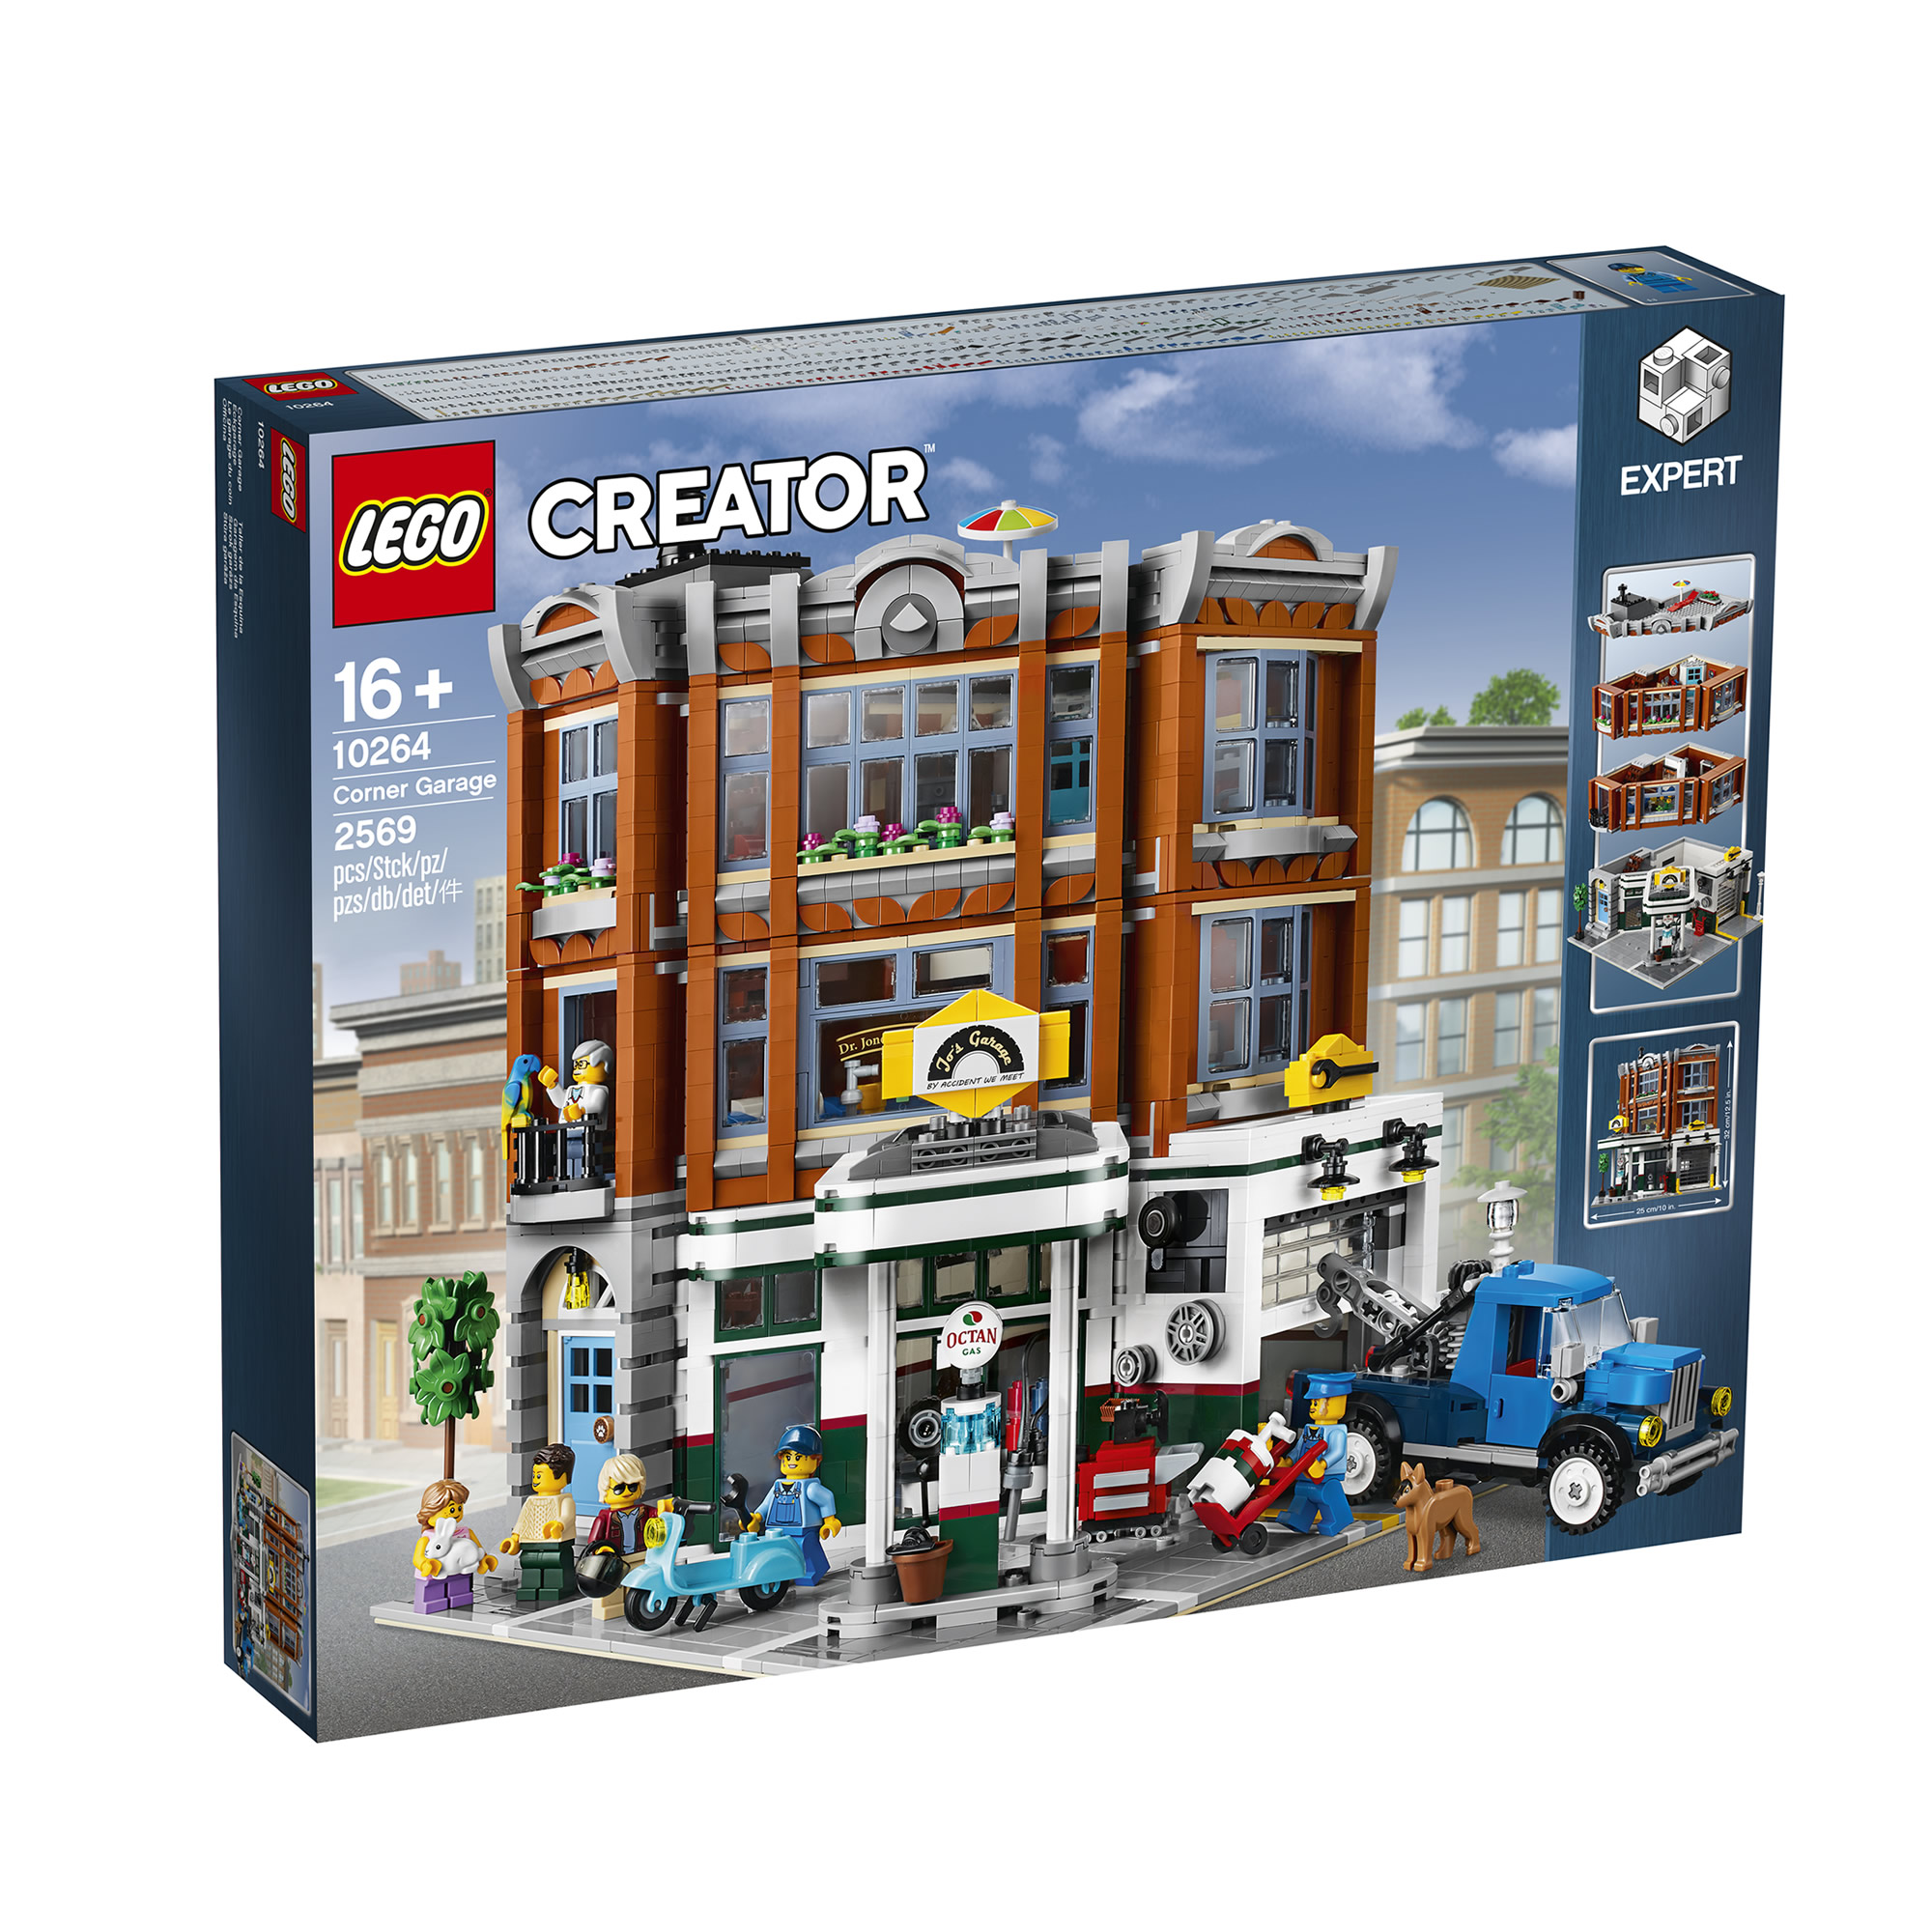 10264 - officina - lego creator expert - toys center - LEGO CREATOR EXPERT